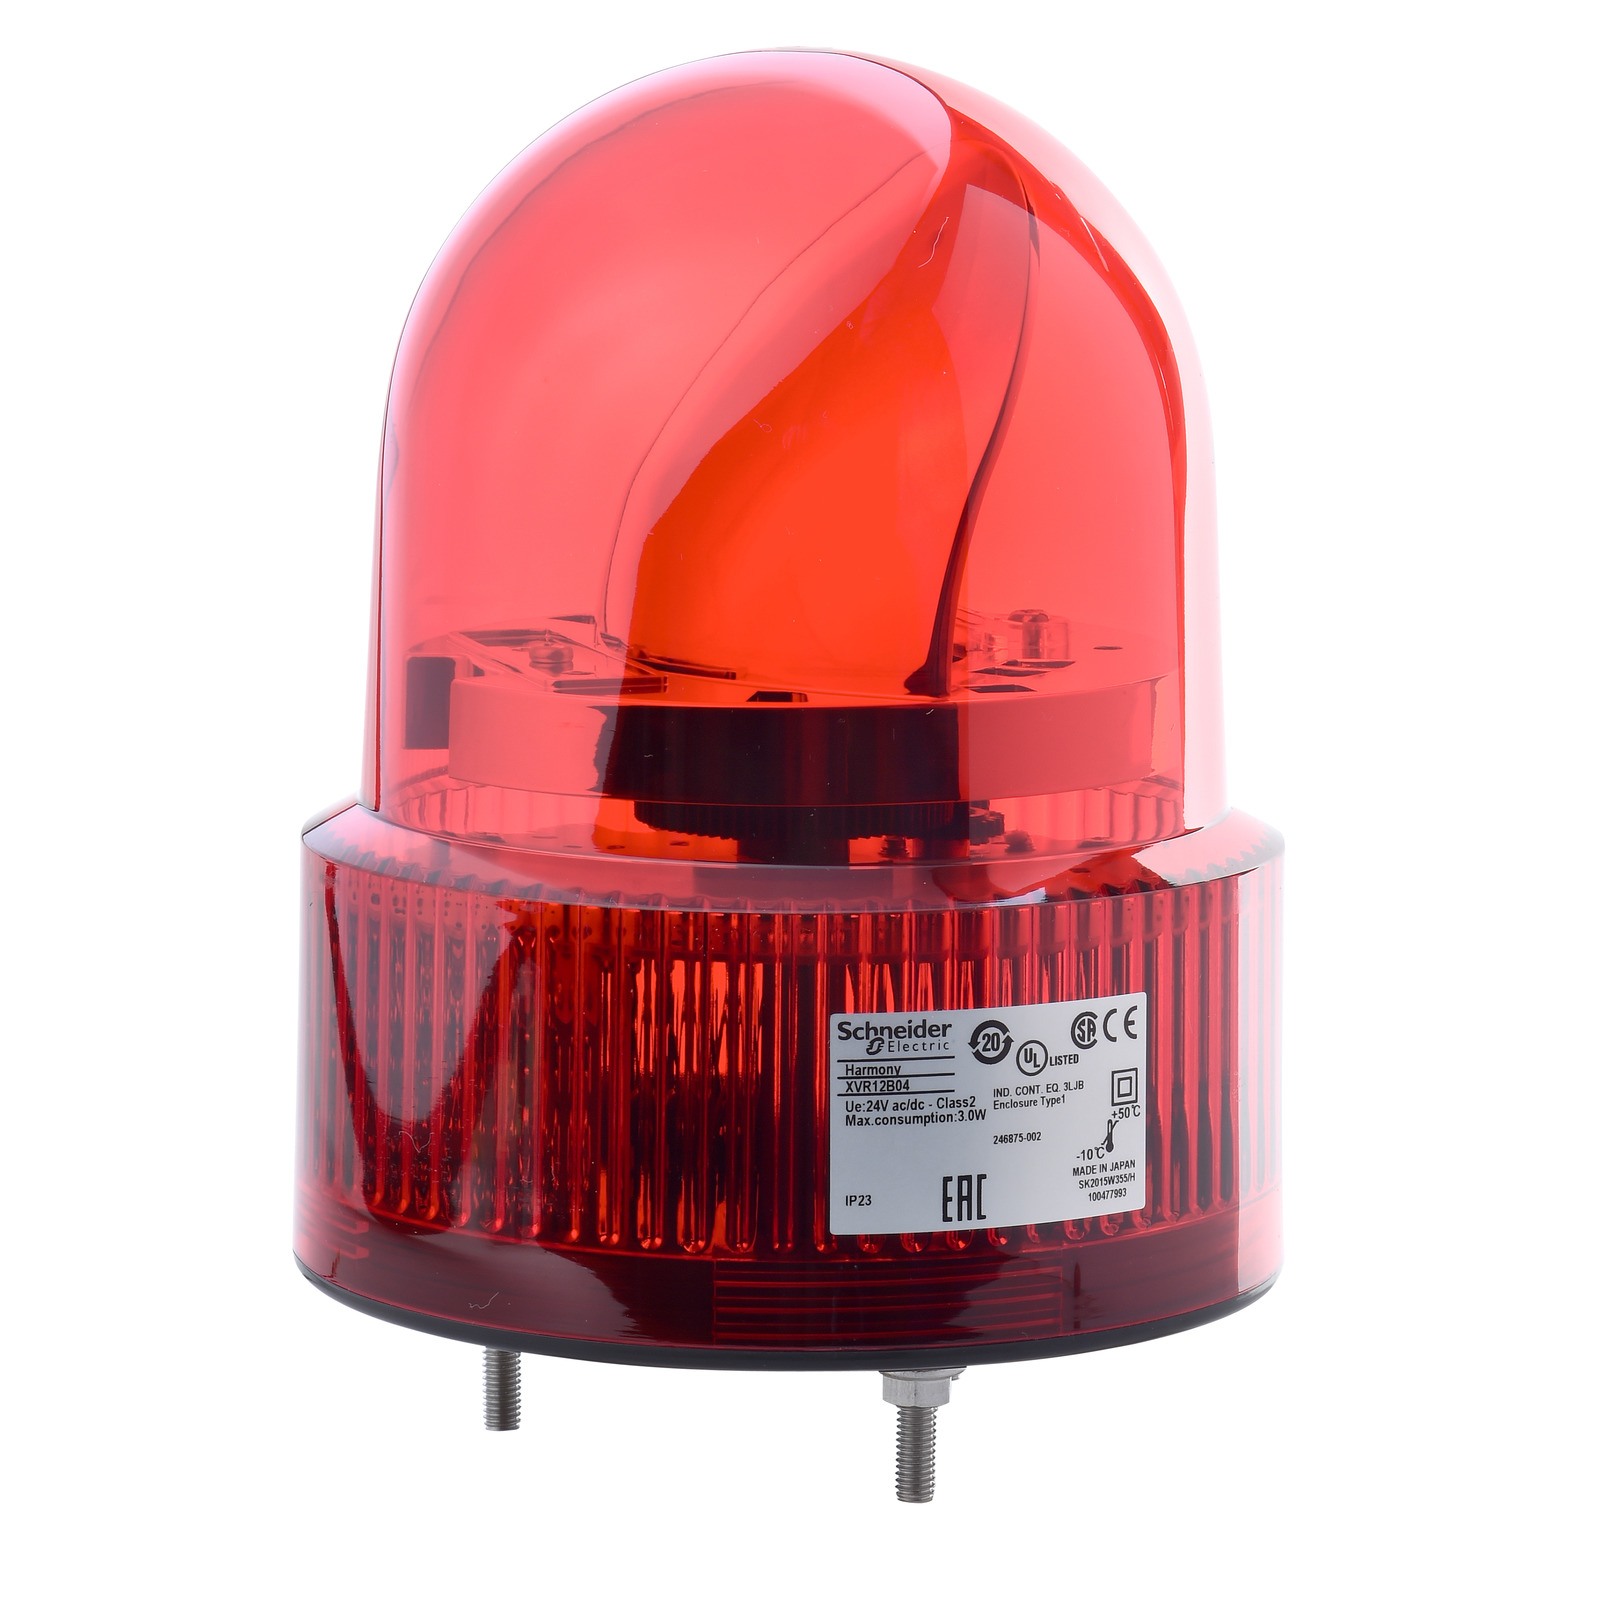 HARMONY XVR forgótükrös jelzőfény LED-es O120 IP23 piros 24V AC/DC 50-